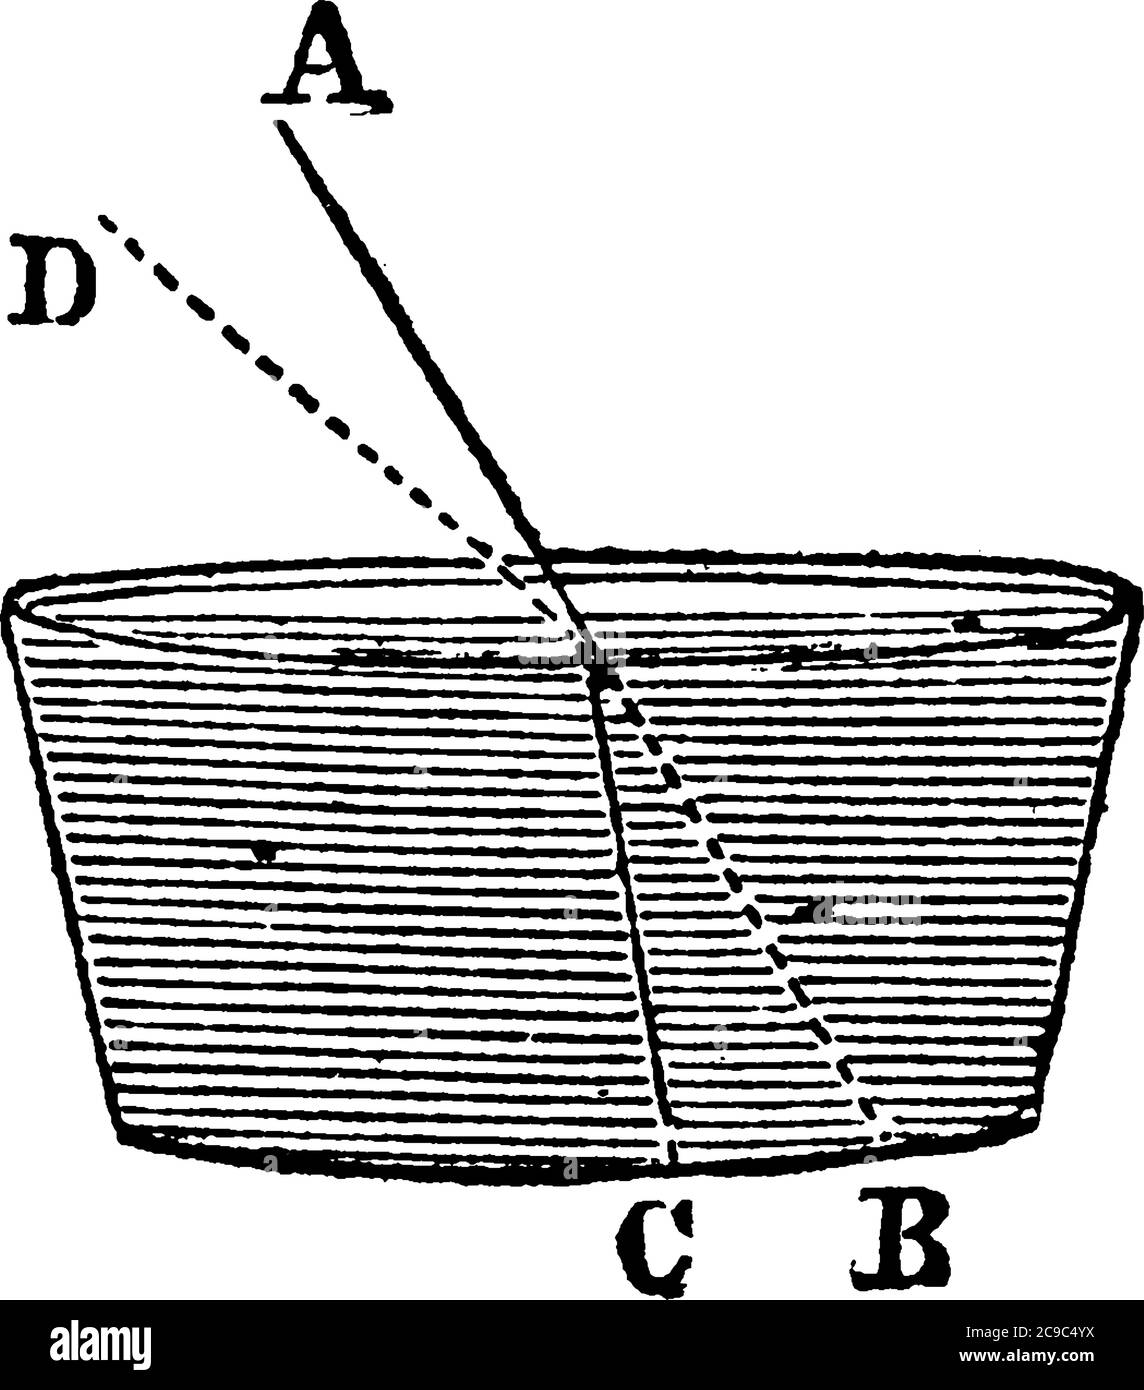 Illustrazione della piegatura del raggio luminoso A quando entra nel mezzo d'acqua, disegno di linea vintage o illustrazione di incisione. Illustrazione Vettoriale